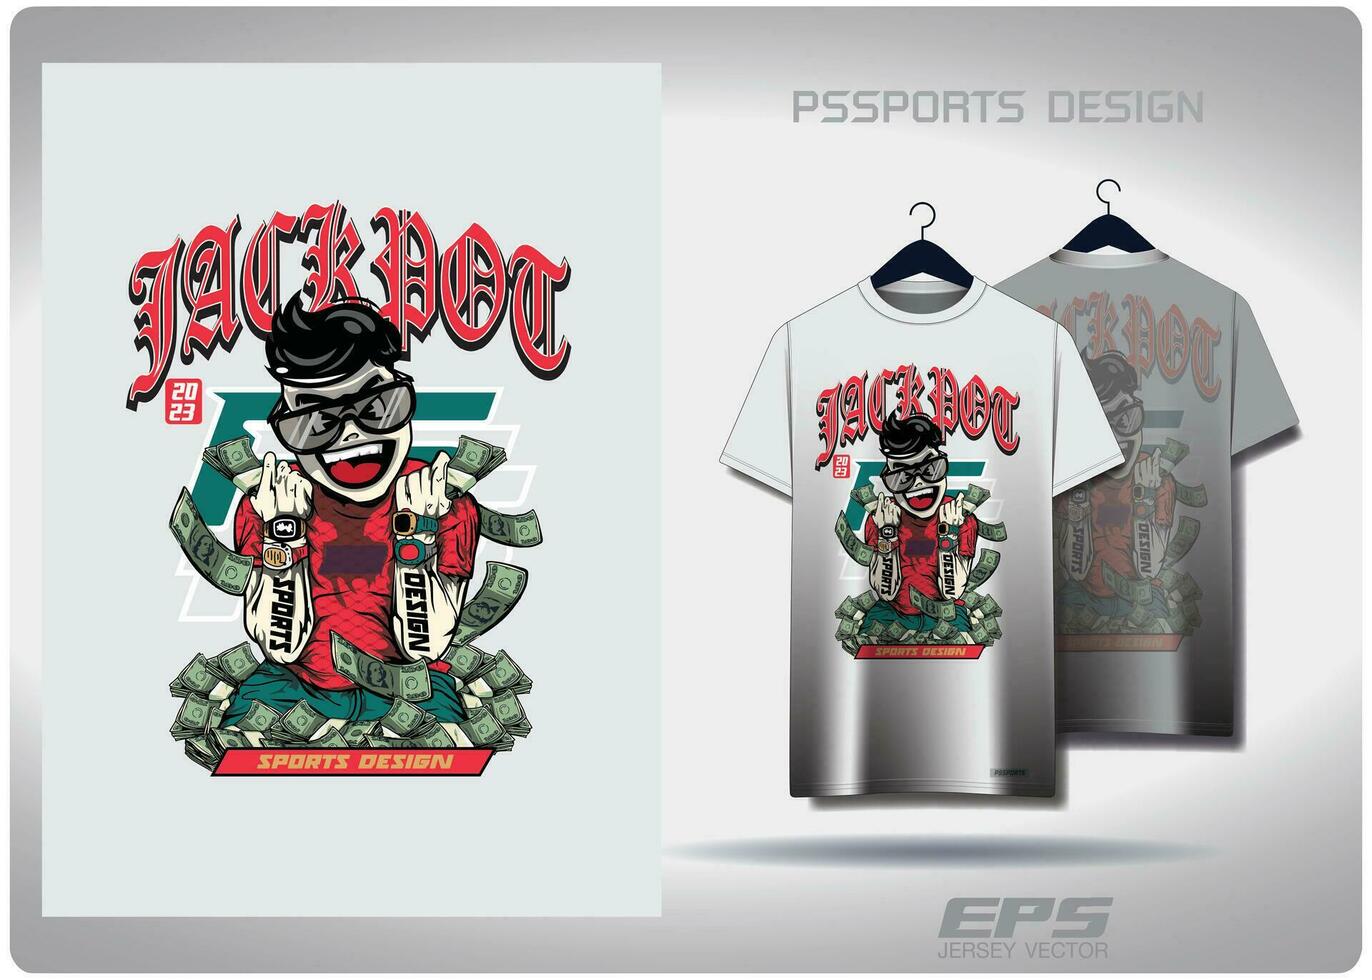 vektor t-shirt bakgrund image.jackpot mönster design, illustration, textil- bakgrund för t-shirt, jersey gata t-shirt